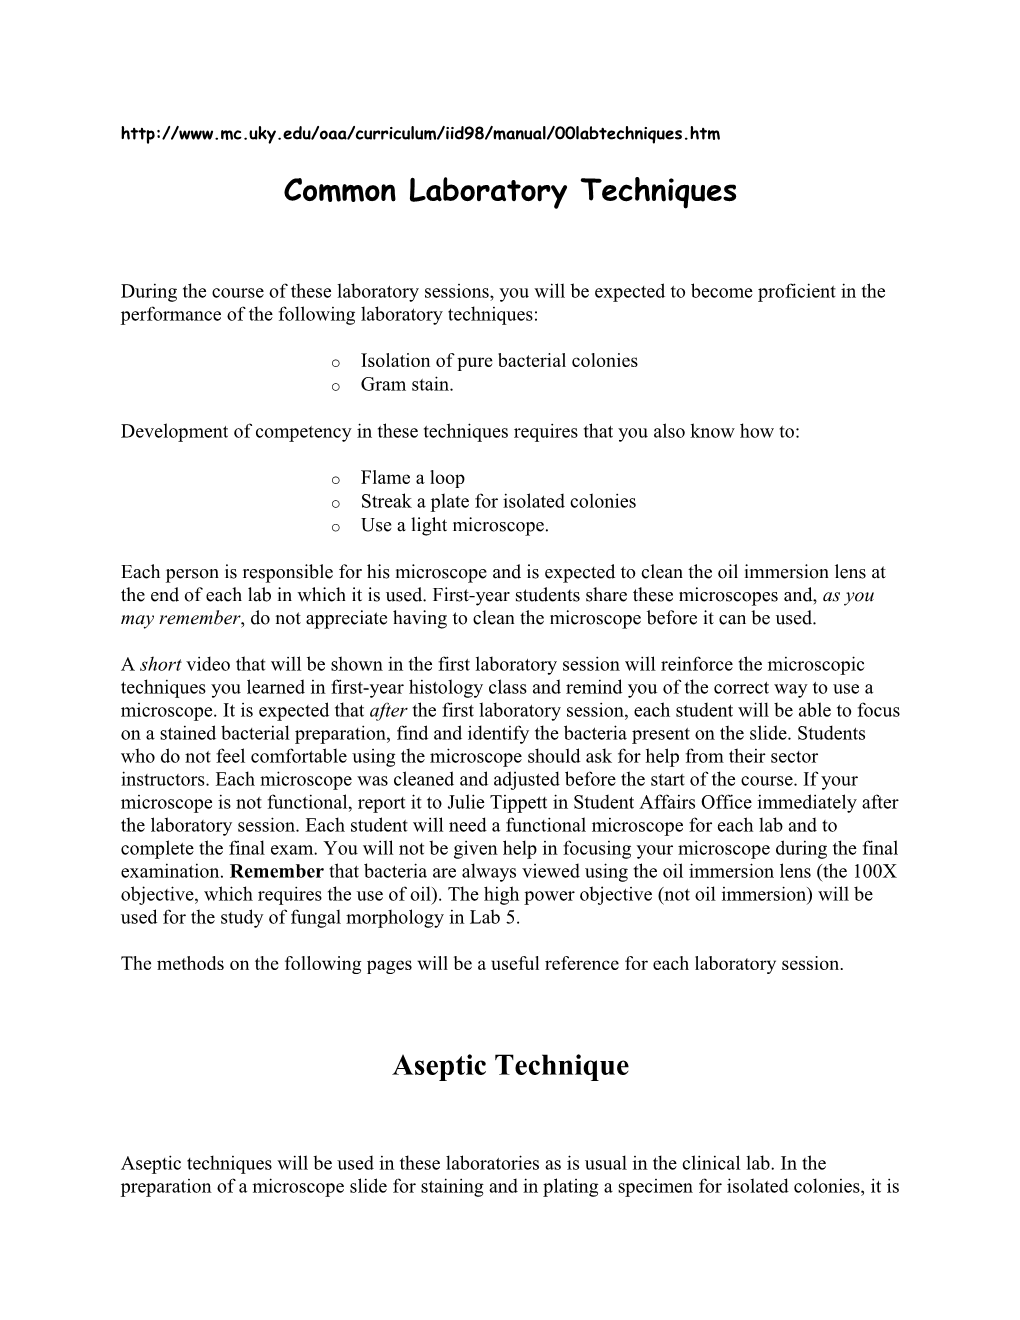 Common Laboratory Techniques